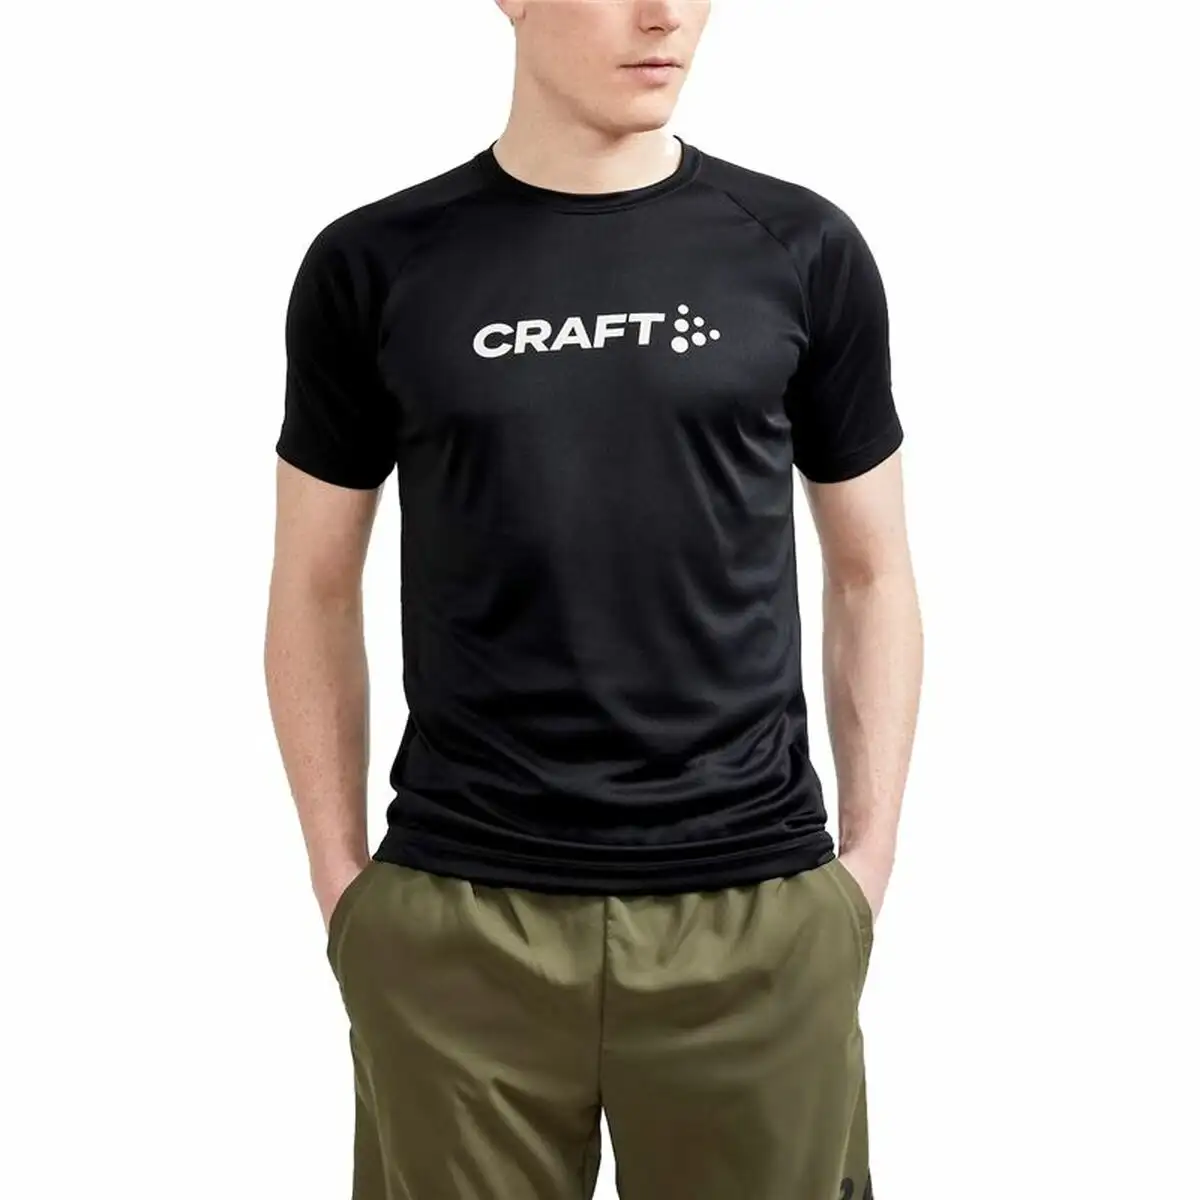 Shirt a manches courtes craft core essence logo noir_6541. DIAYTAR SENEGAL - L'Art du Shopping Facilité. Naviguez sur notre plateforme en ligne pour découvrir une expérience d'achat fluide et agréable, avec une gamme de produits adaptés à tous.